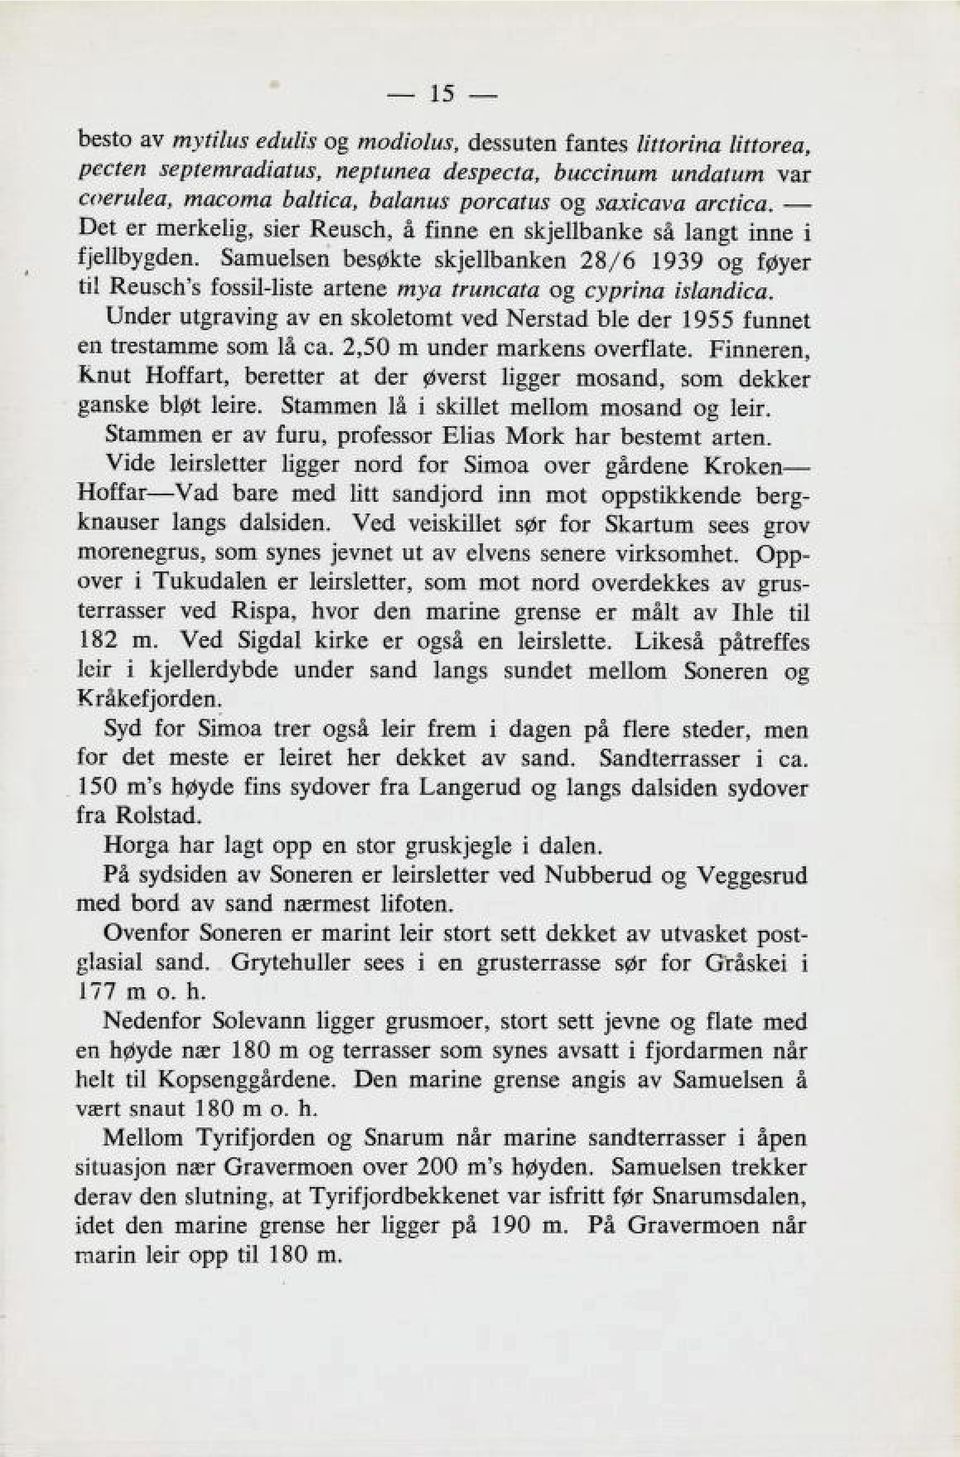 Samuelsen besøkte skjellbanken 28/6 1939 og føyer til Reusch's fossil-liste artene mya truncata og cyprina islandica.